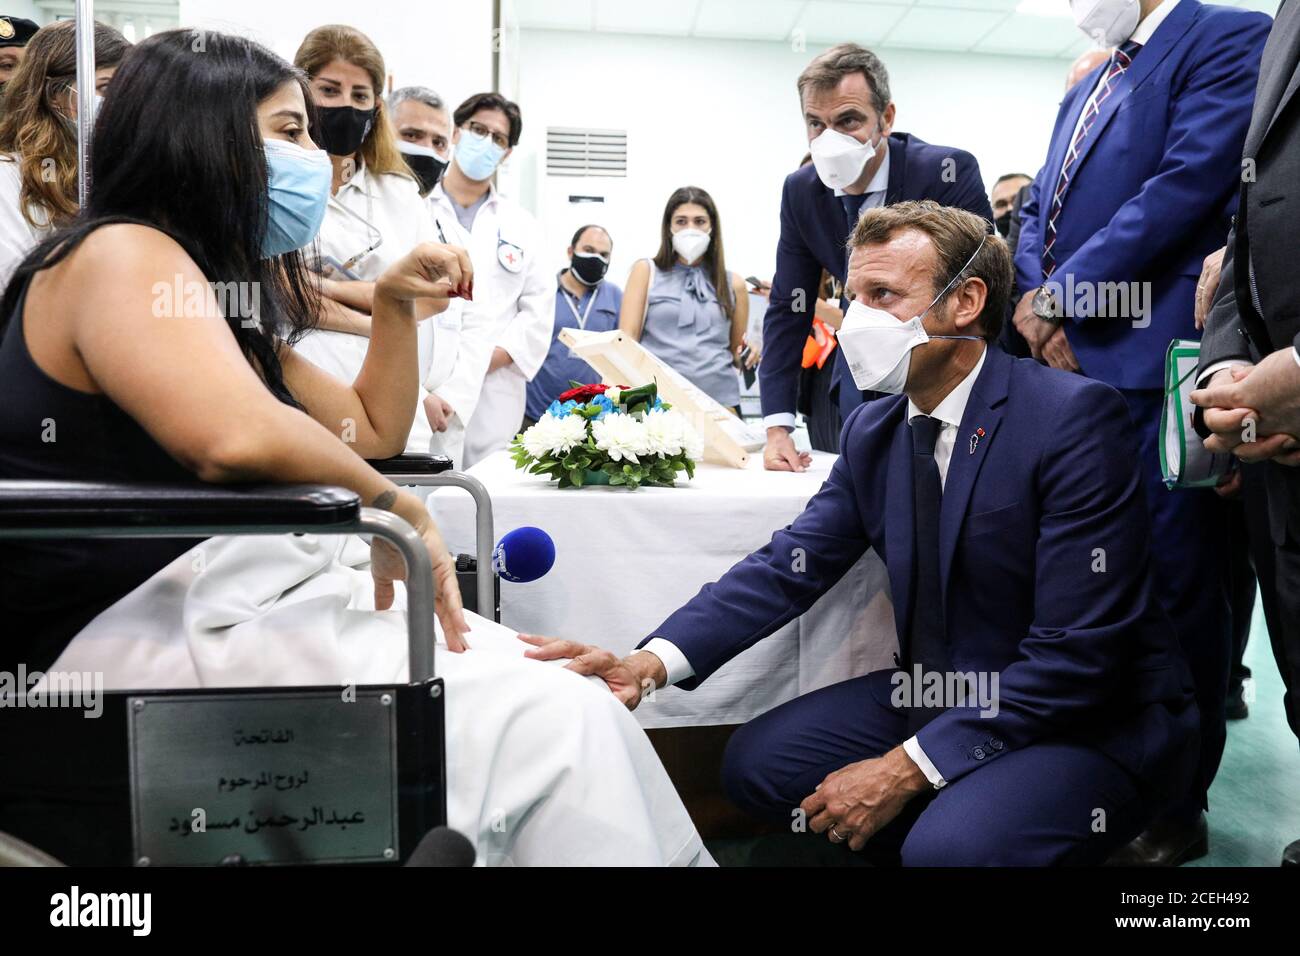 El presidente francés Emmanuel Macron y el ministro de Salud francés Olivier Veran visitan el Hospital Universitario Rafik Hariri en Beirut, Líbano, 1 de septiembre de 2020. Stephane Lemouton/Pool vía REUTERS Foto de stock